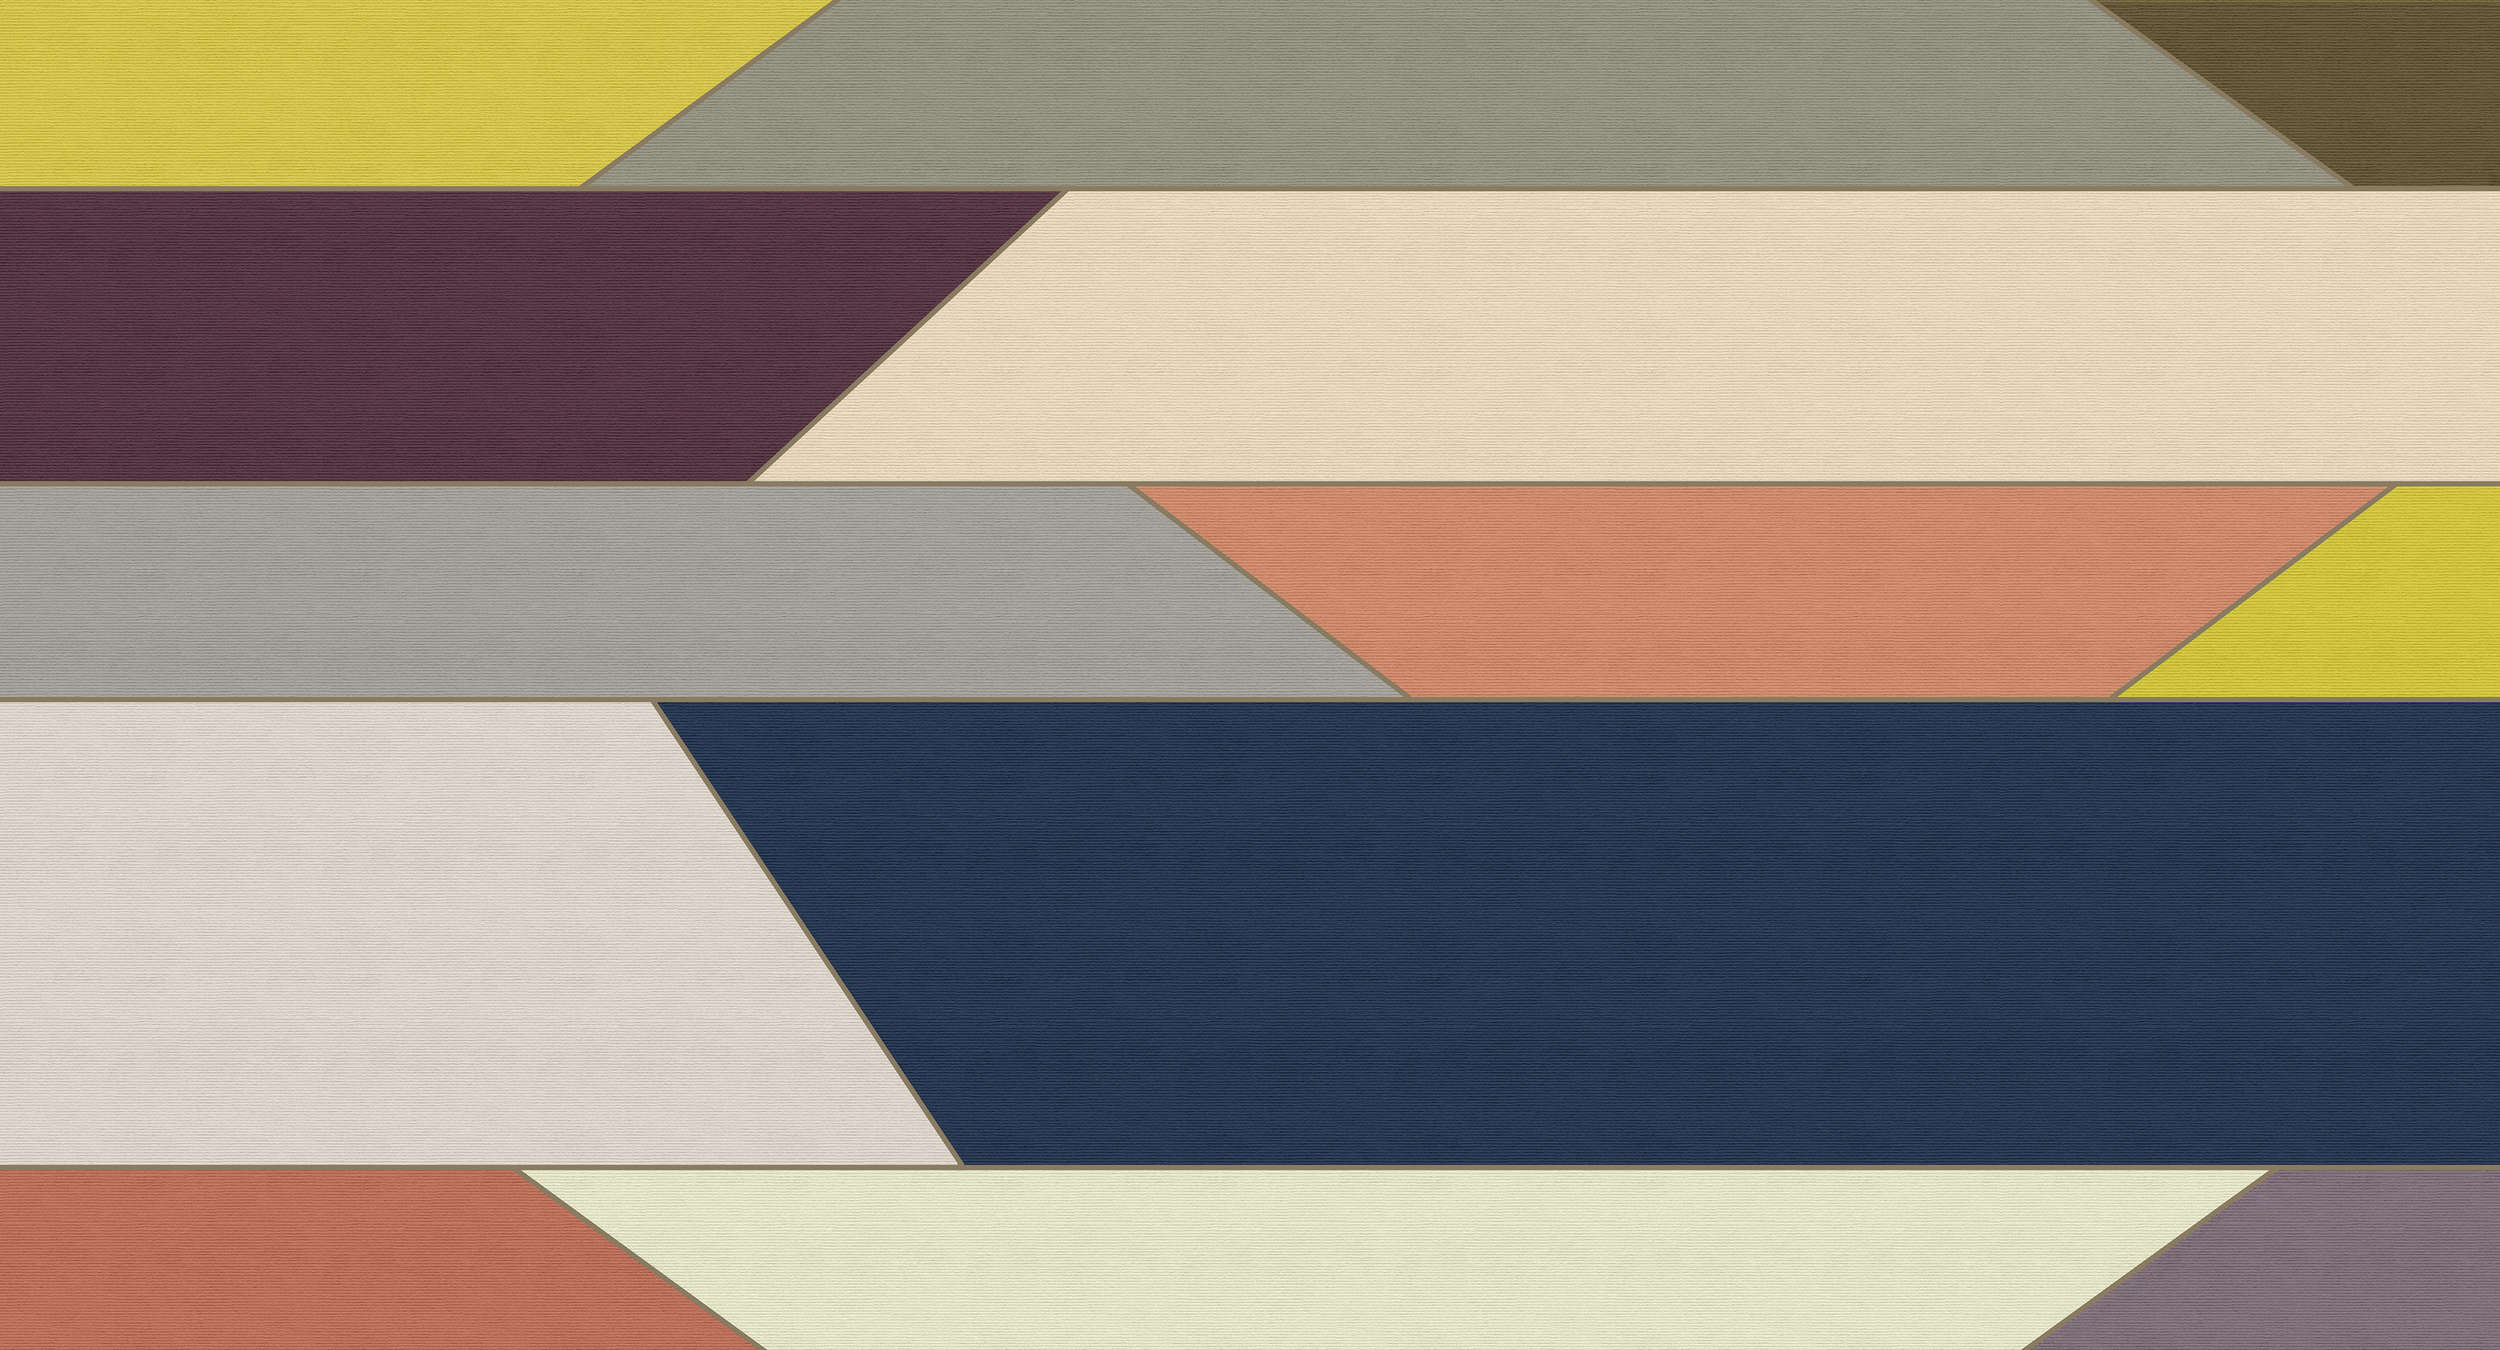             Geometry 1 - Papier peint à rayures horizontales multicolores - À structure côtelée - Beige, Bleu | Nacré intissé lisse
        